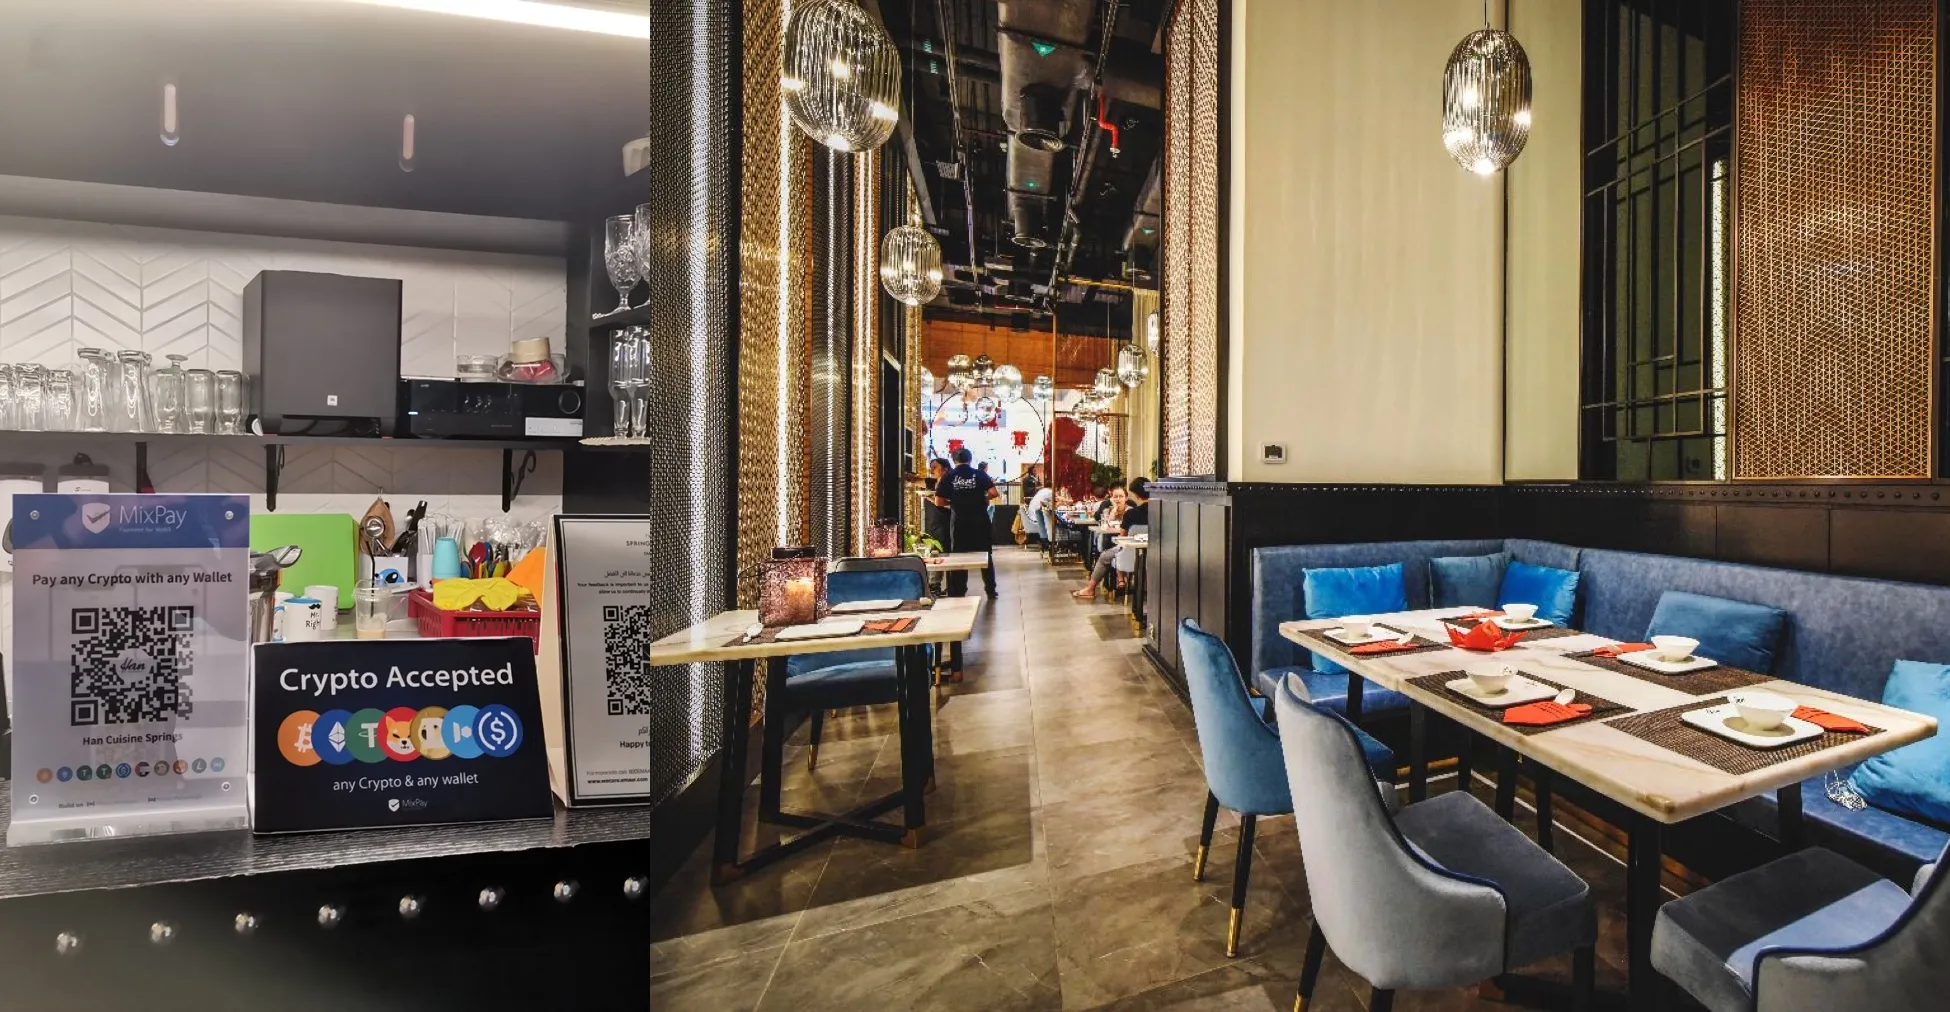 „Han Cuisine“ restoranas ir „MixPay“ užmezgė strateginę partnerystę